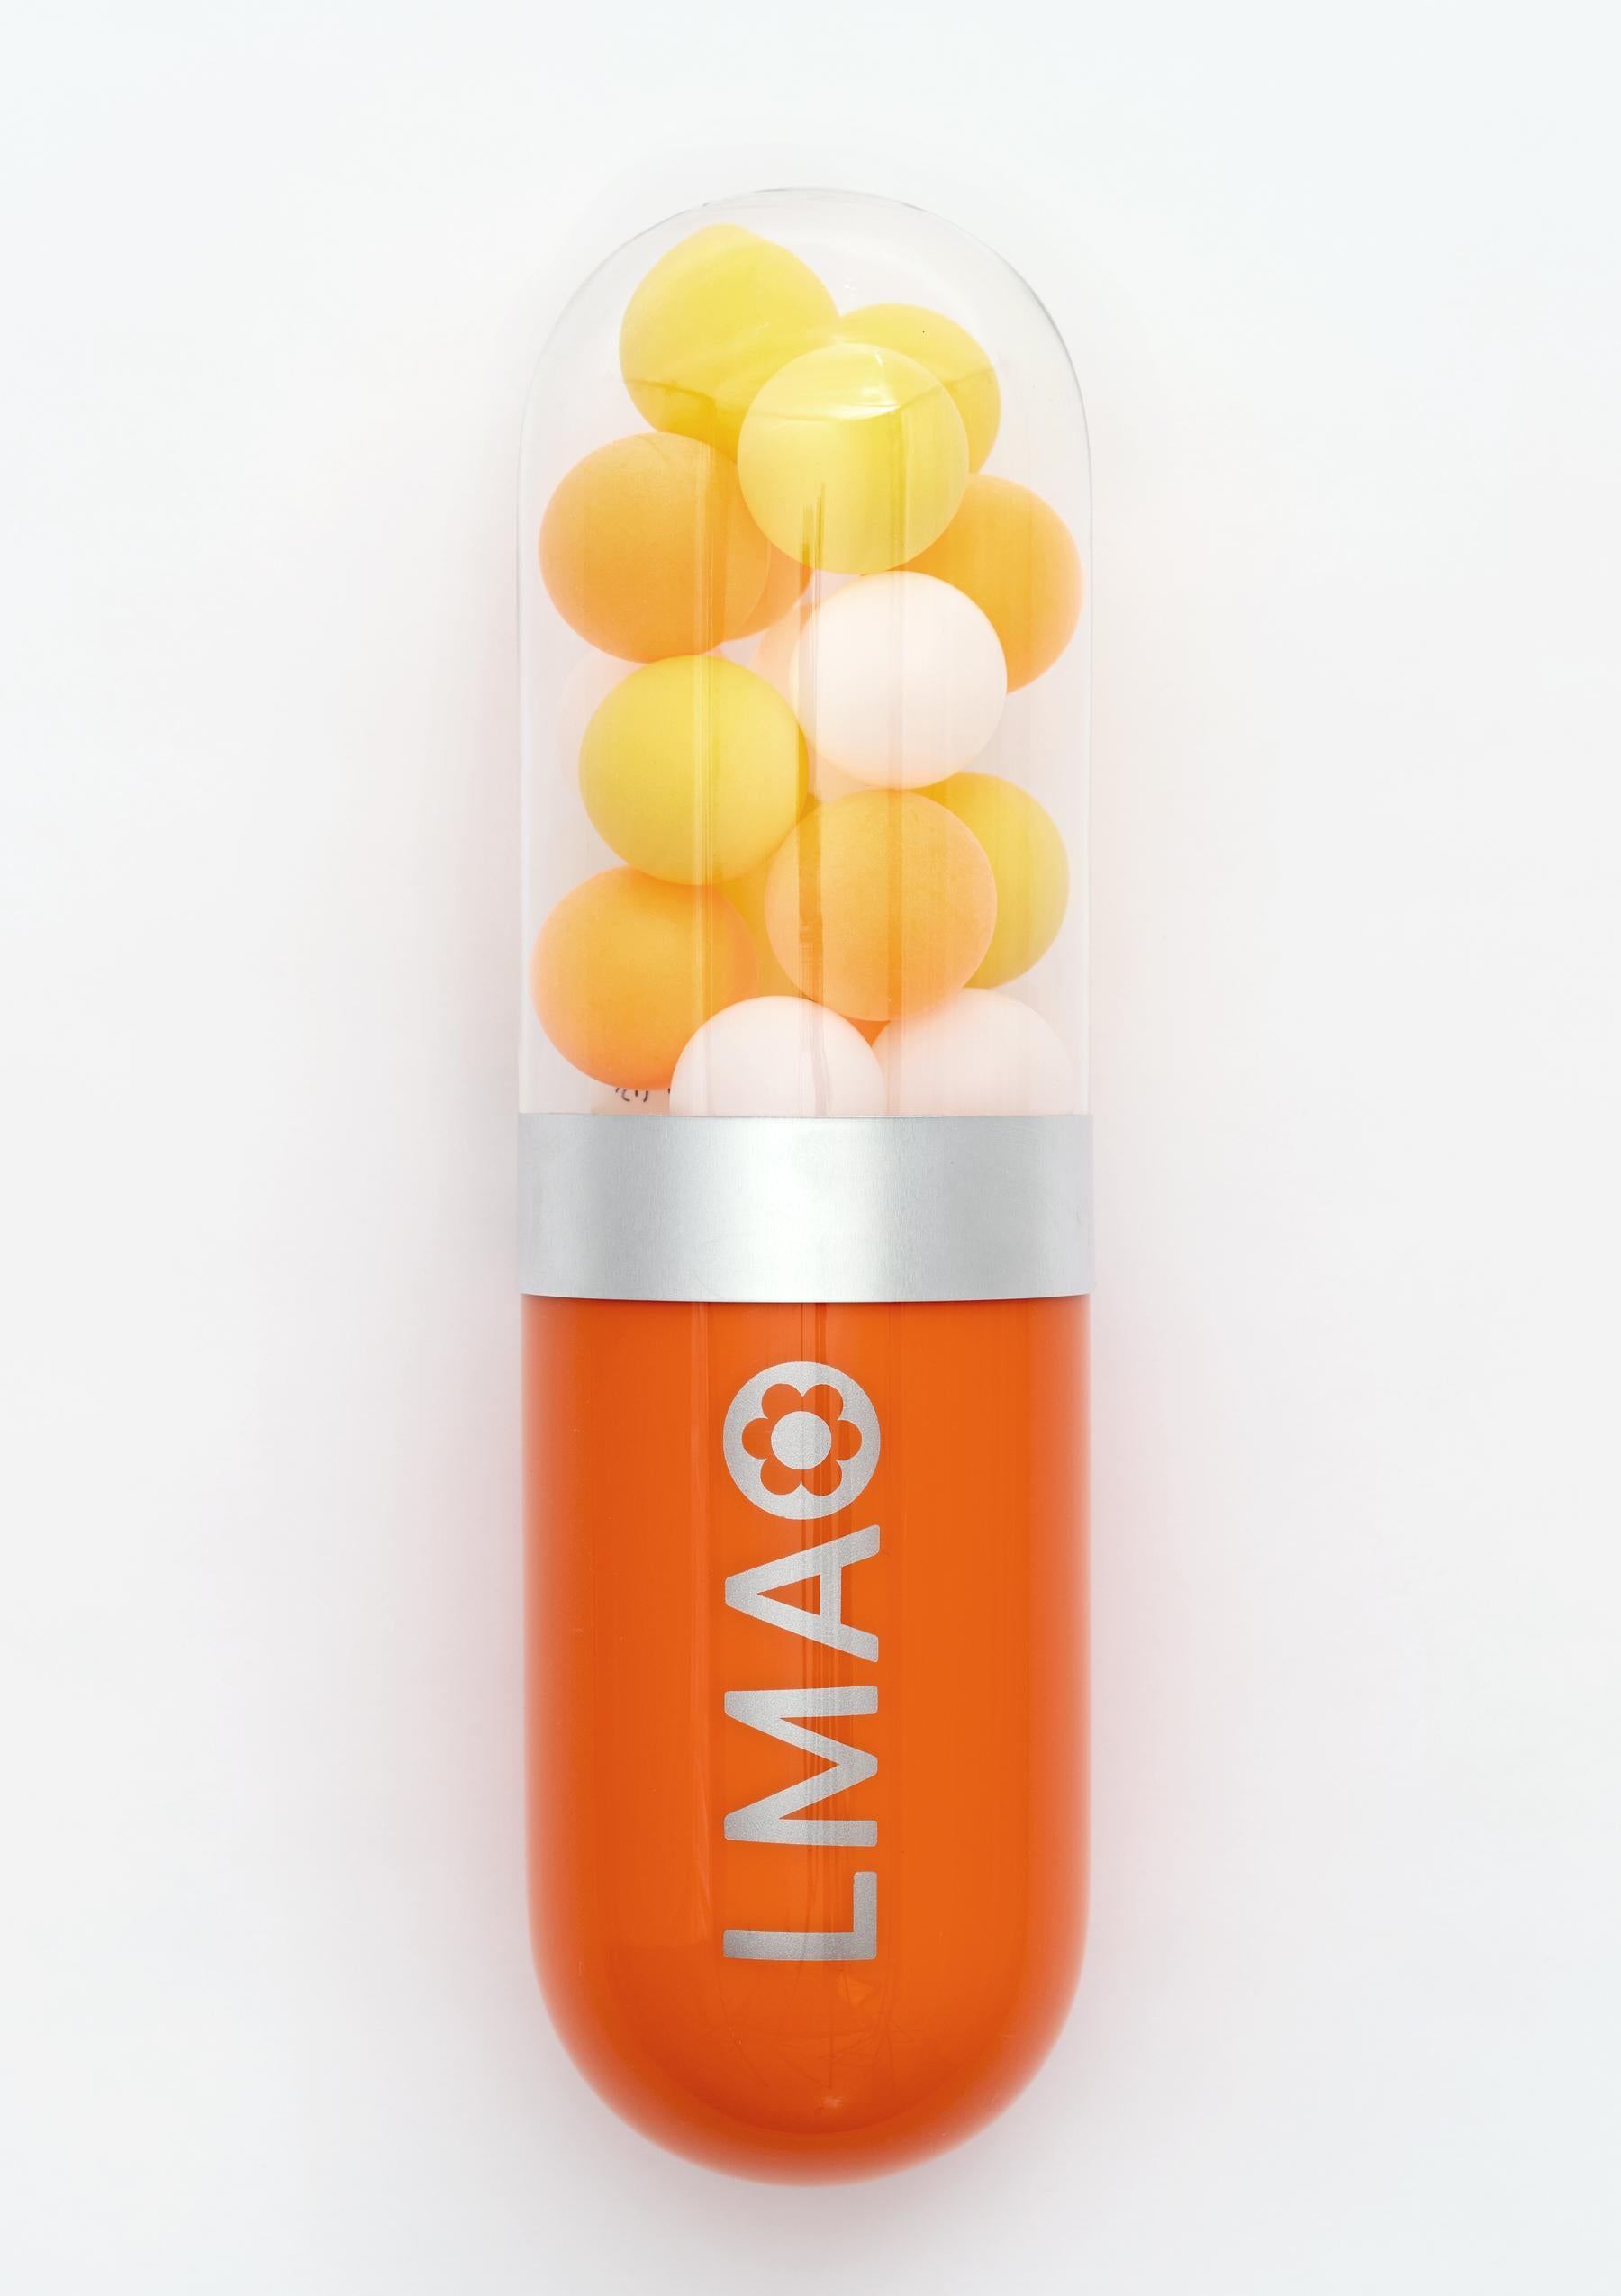 LMAO (Laughing My Ass Off) - Orange glass pill sculpture - Sculpture by Edie Nadelhaft